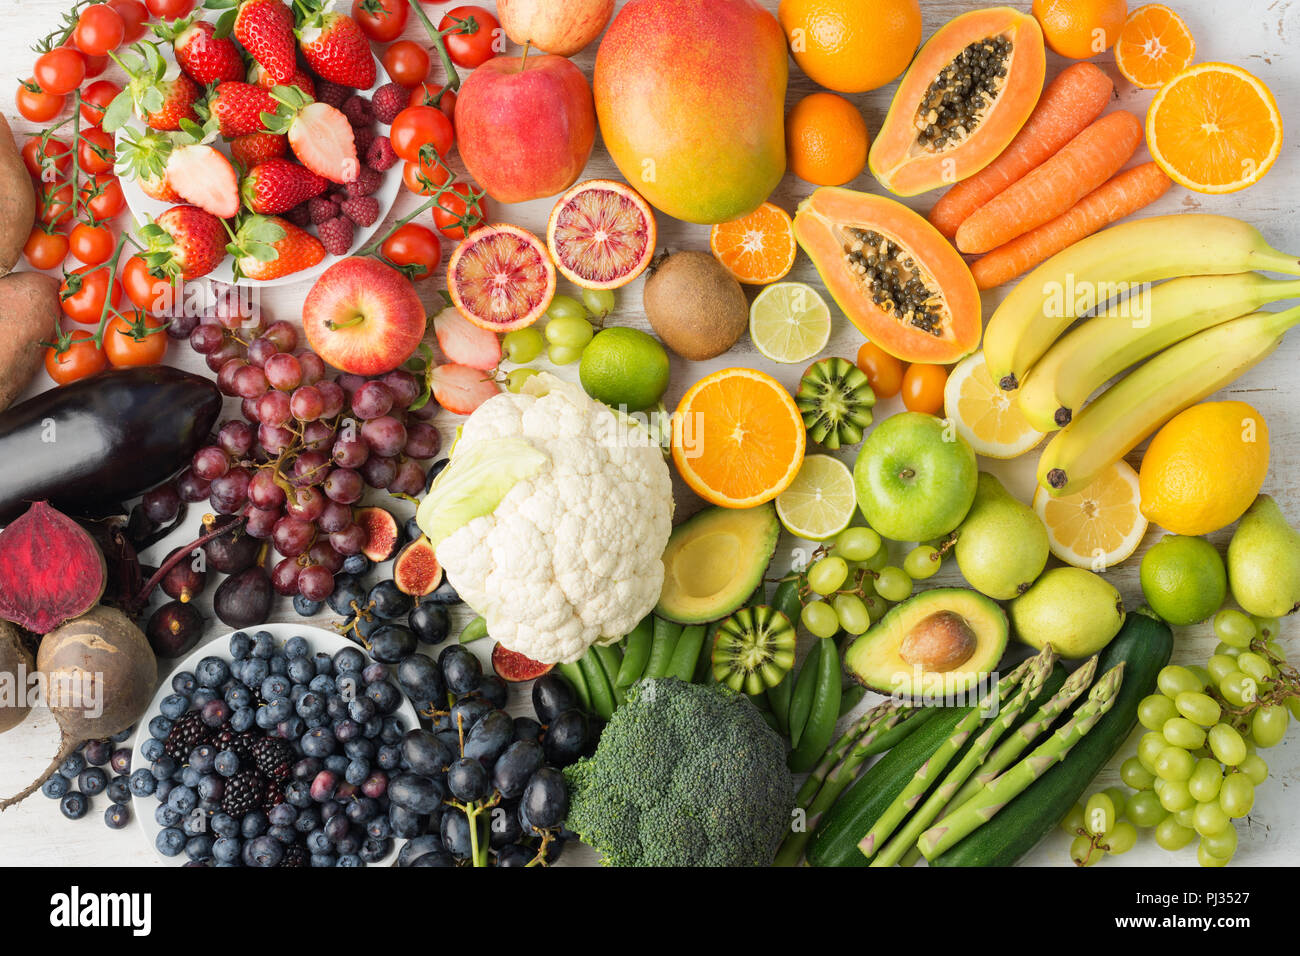 Arrière-plan de saine alimentation, assortiment de fruits et légumes différents dans les couleurs arc-en-ciel sur l'off white table dans un rectangle, vue du dessus, selective focus Banque D'Images